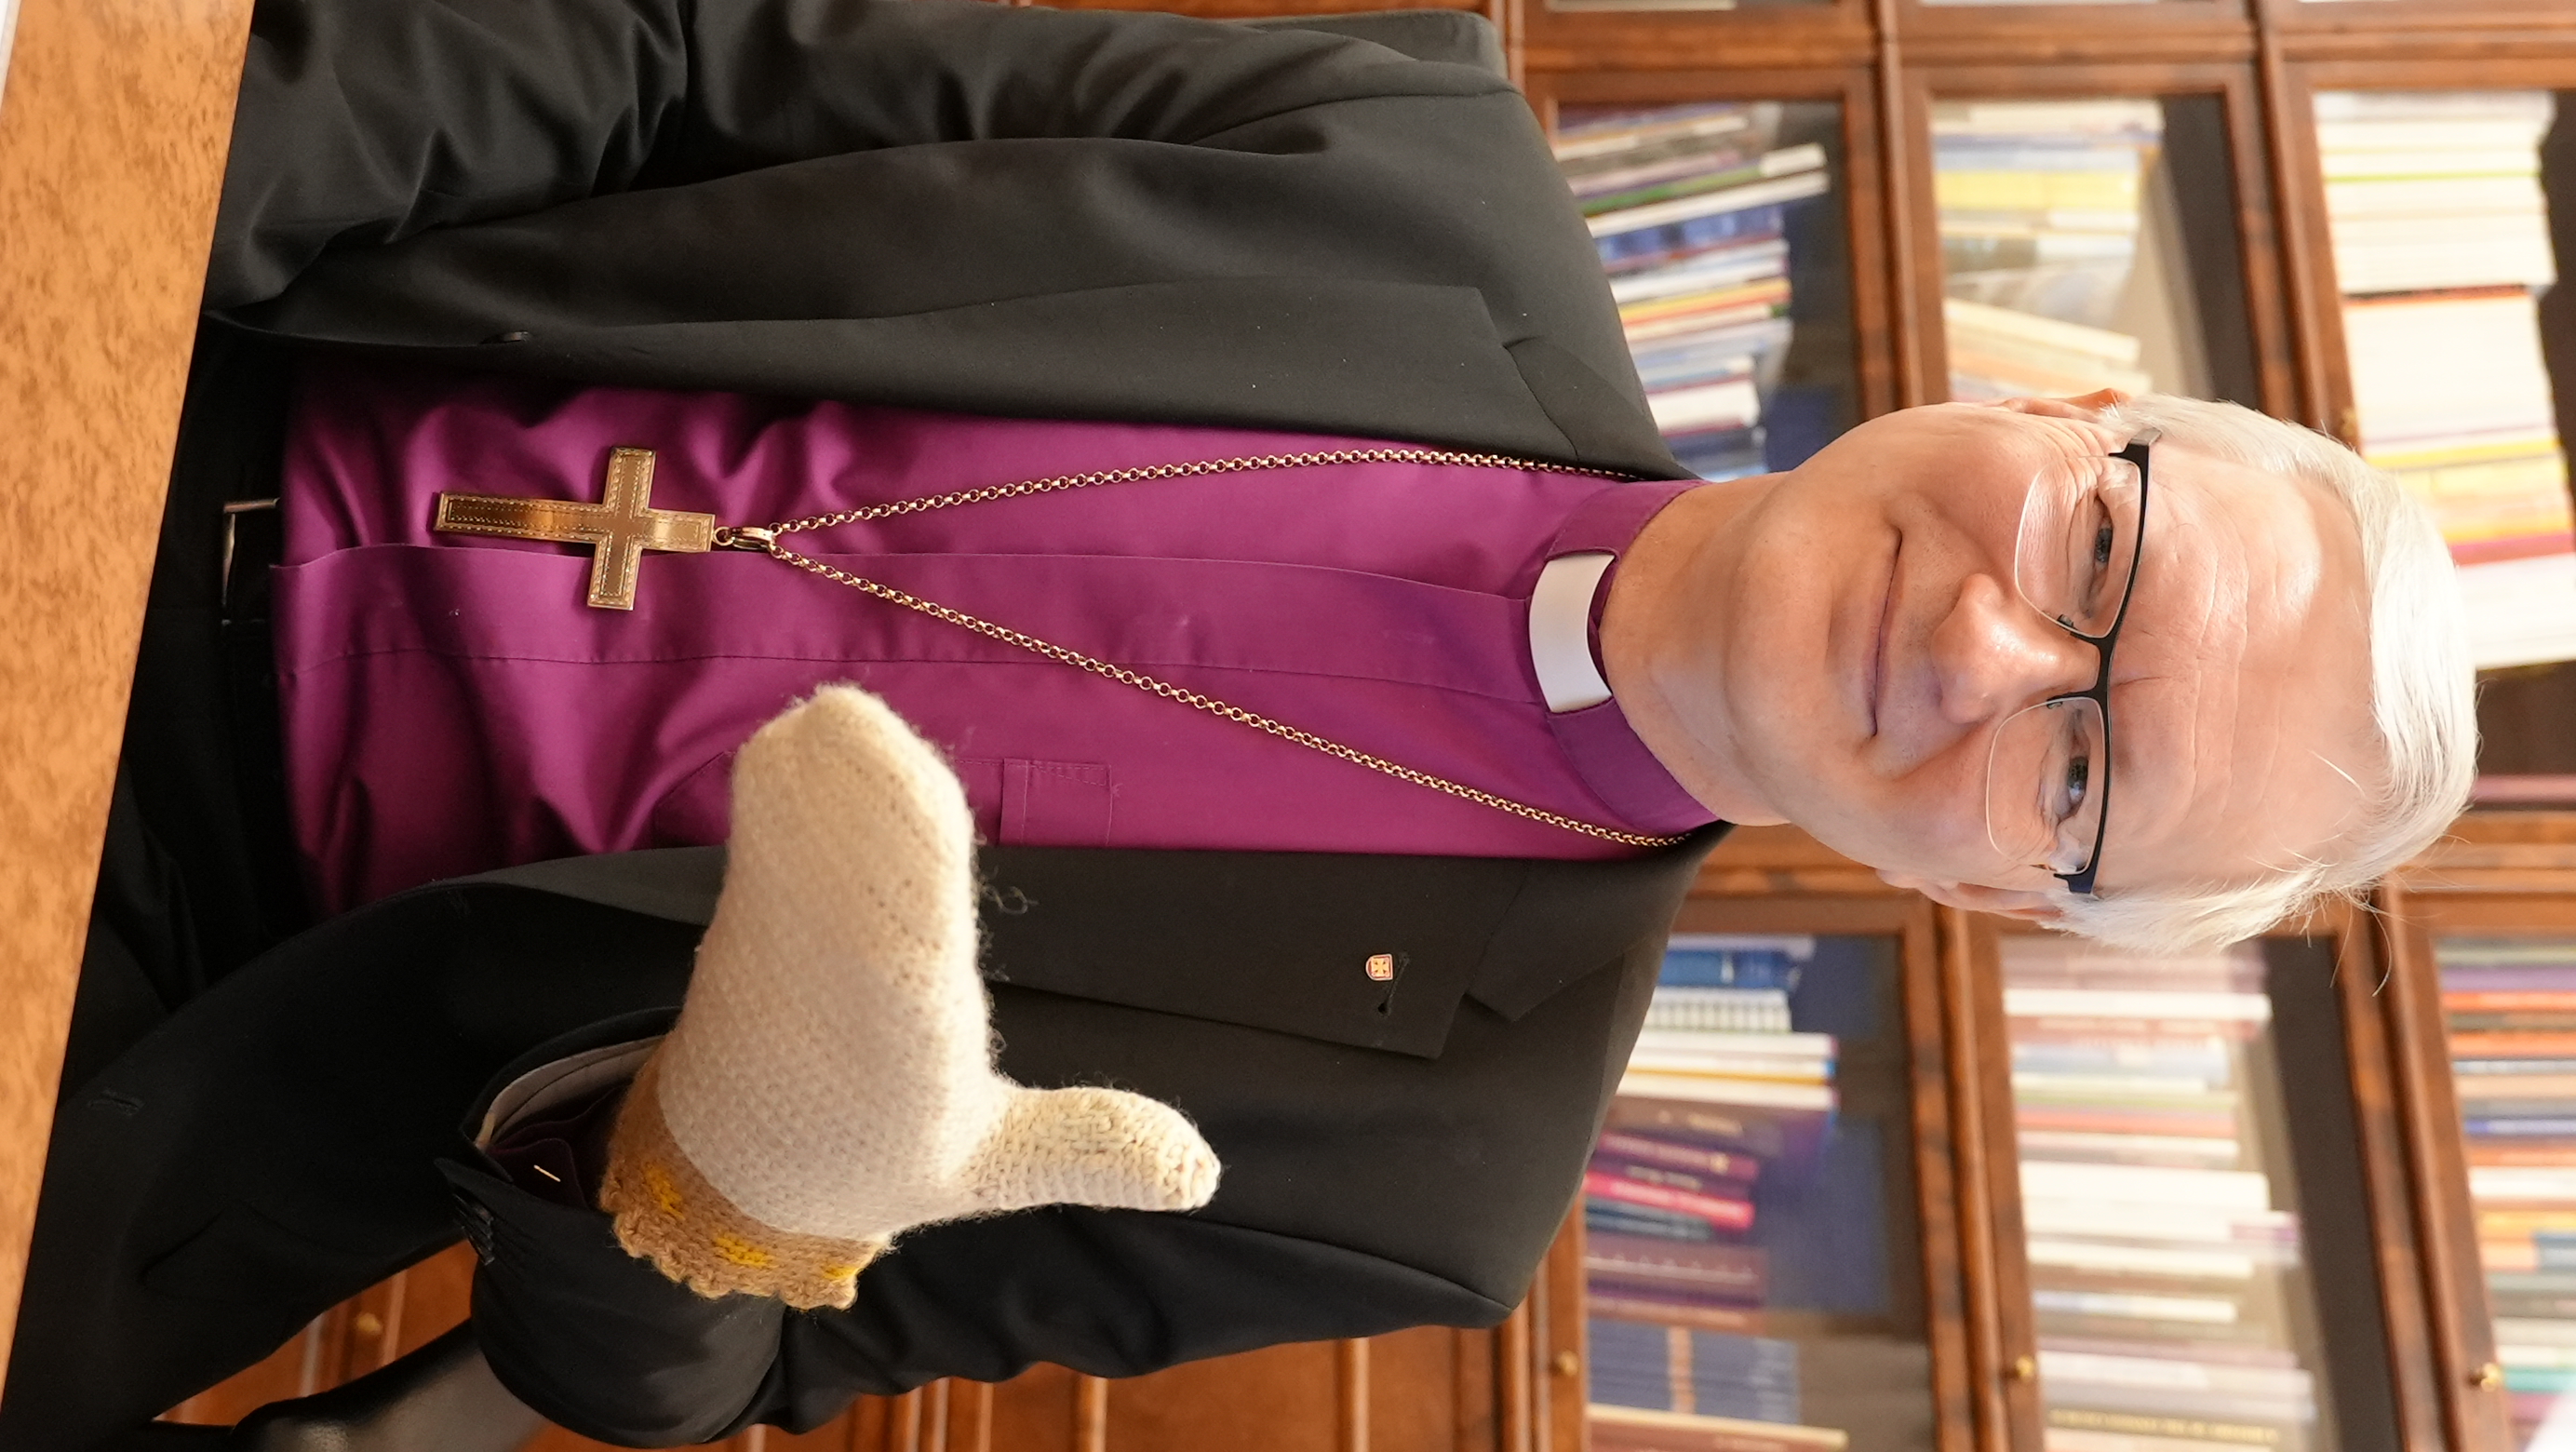 Piispa pitää kädessään valkoista villalapasta.